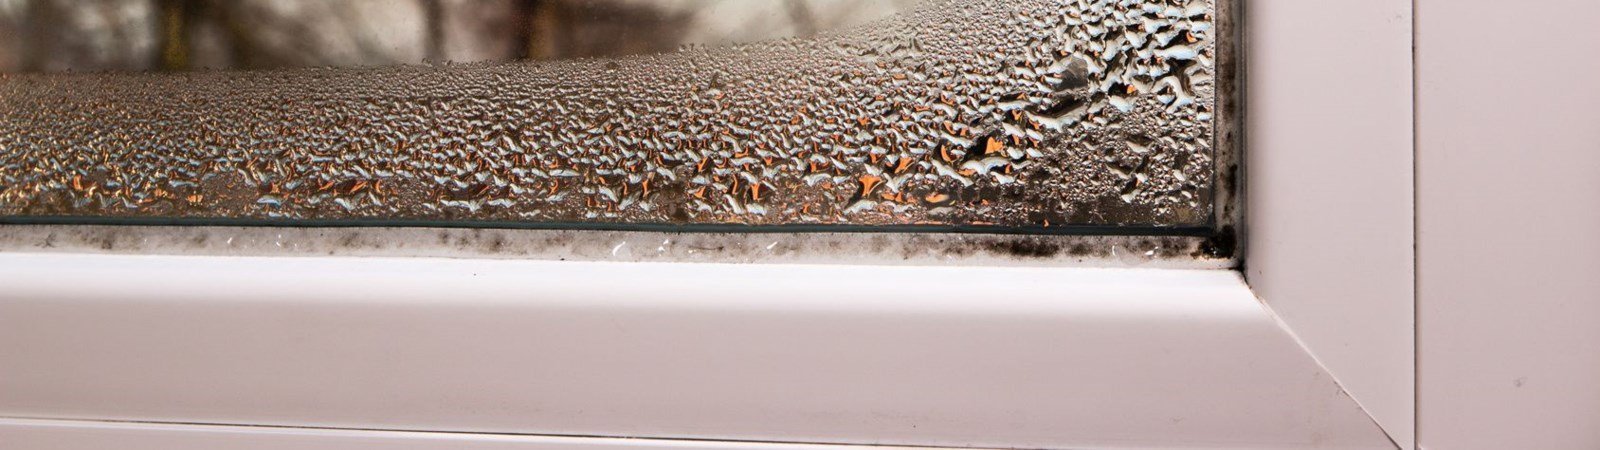 Nasse Fenster im Winter: 5 Tipps, damit sich kein Kondenswasser mehr bildet